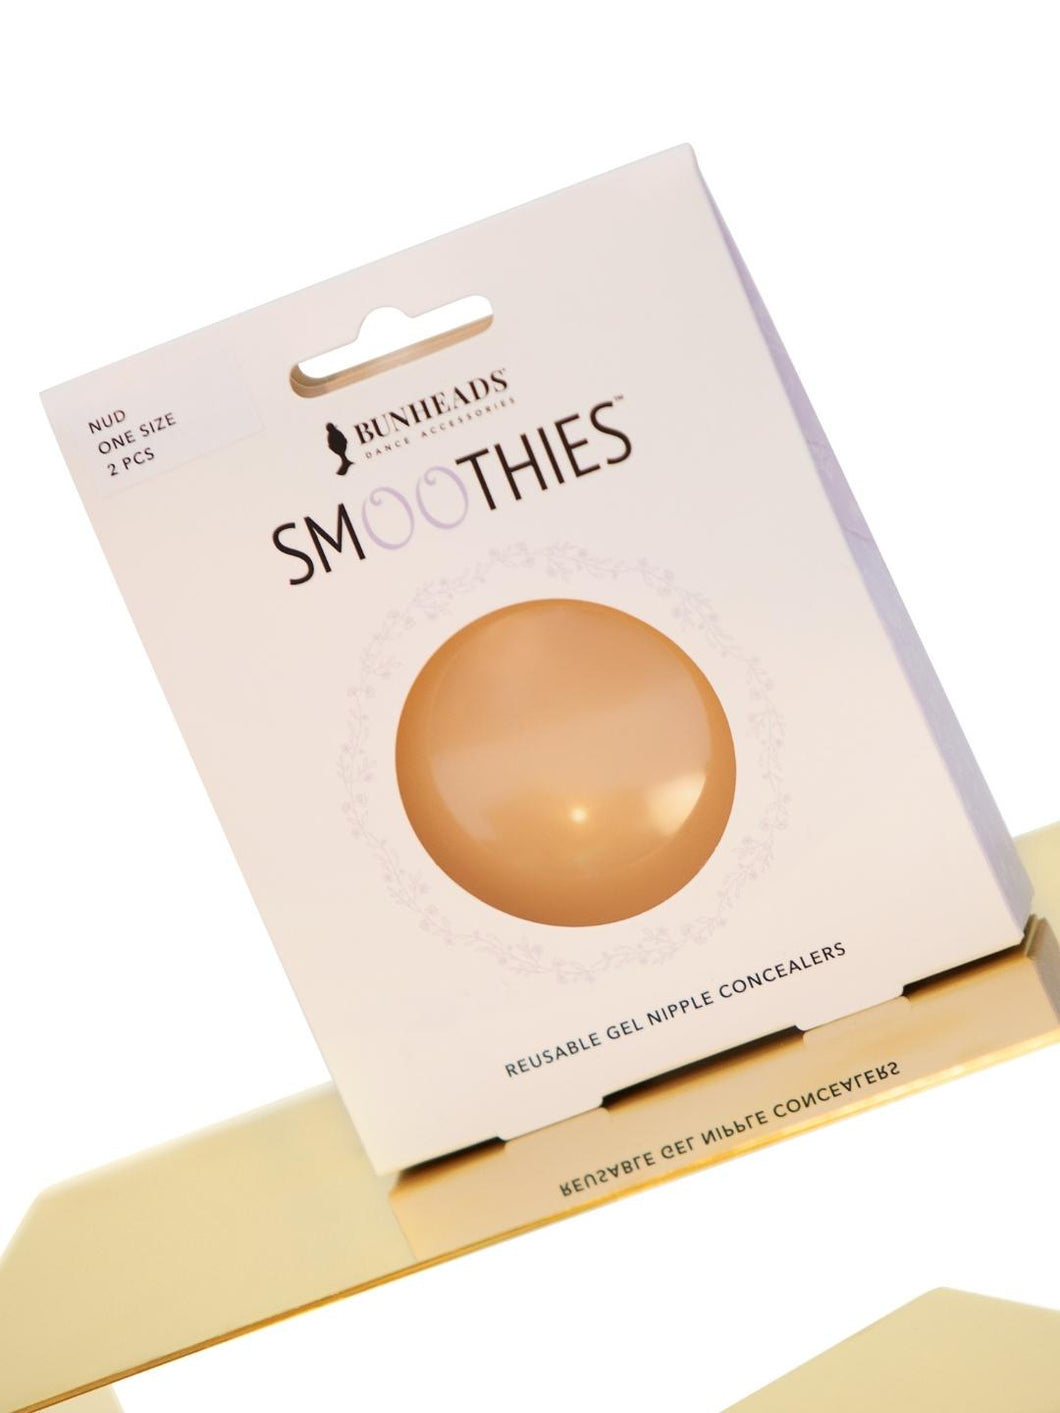 Bunheads Smoothies - Reusable Gel Nipple Concealers